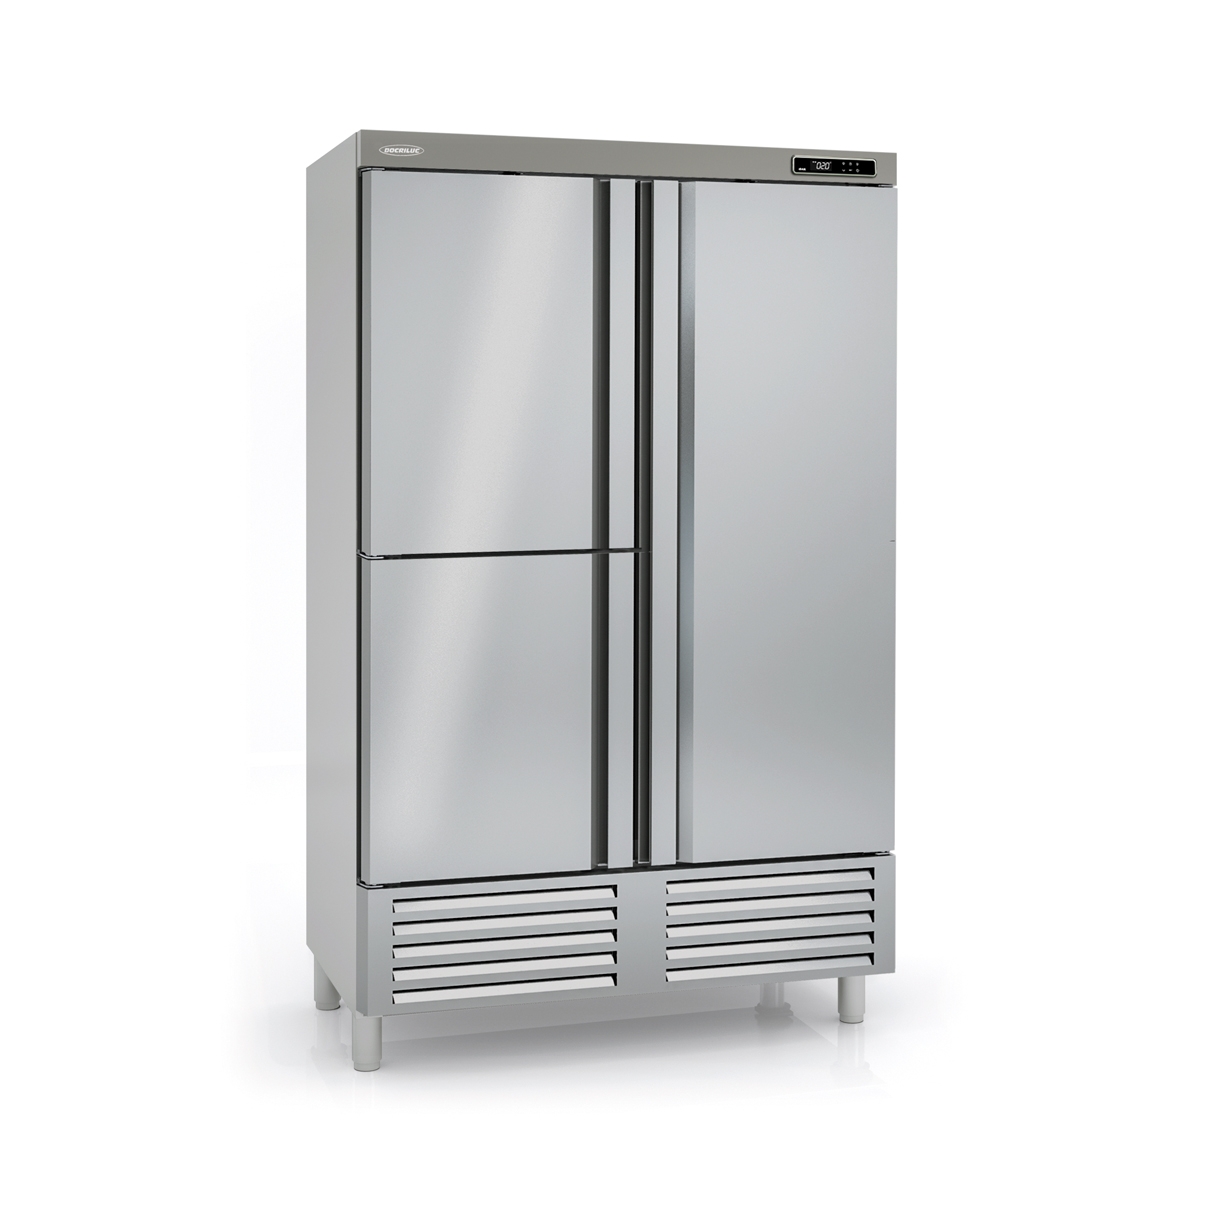 Snack Freezing Cabinet ARC-125-3